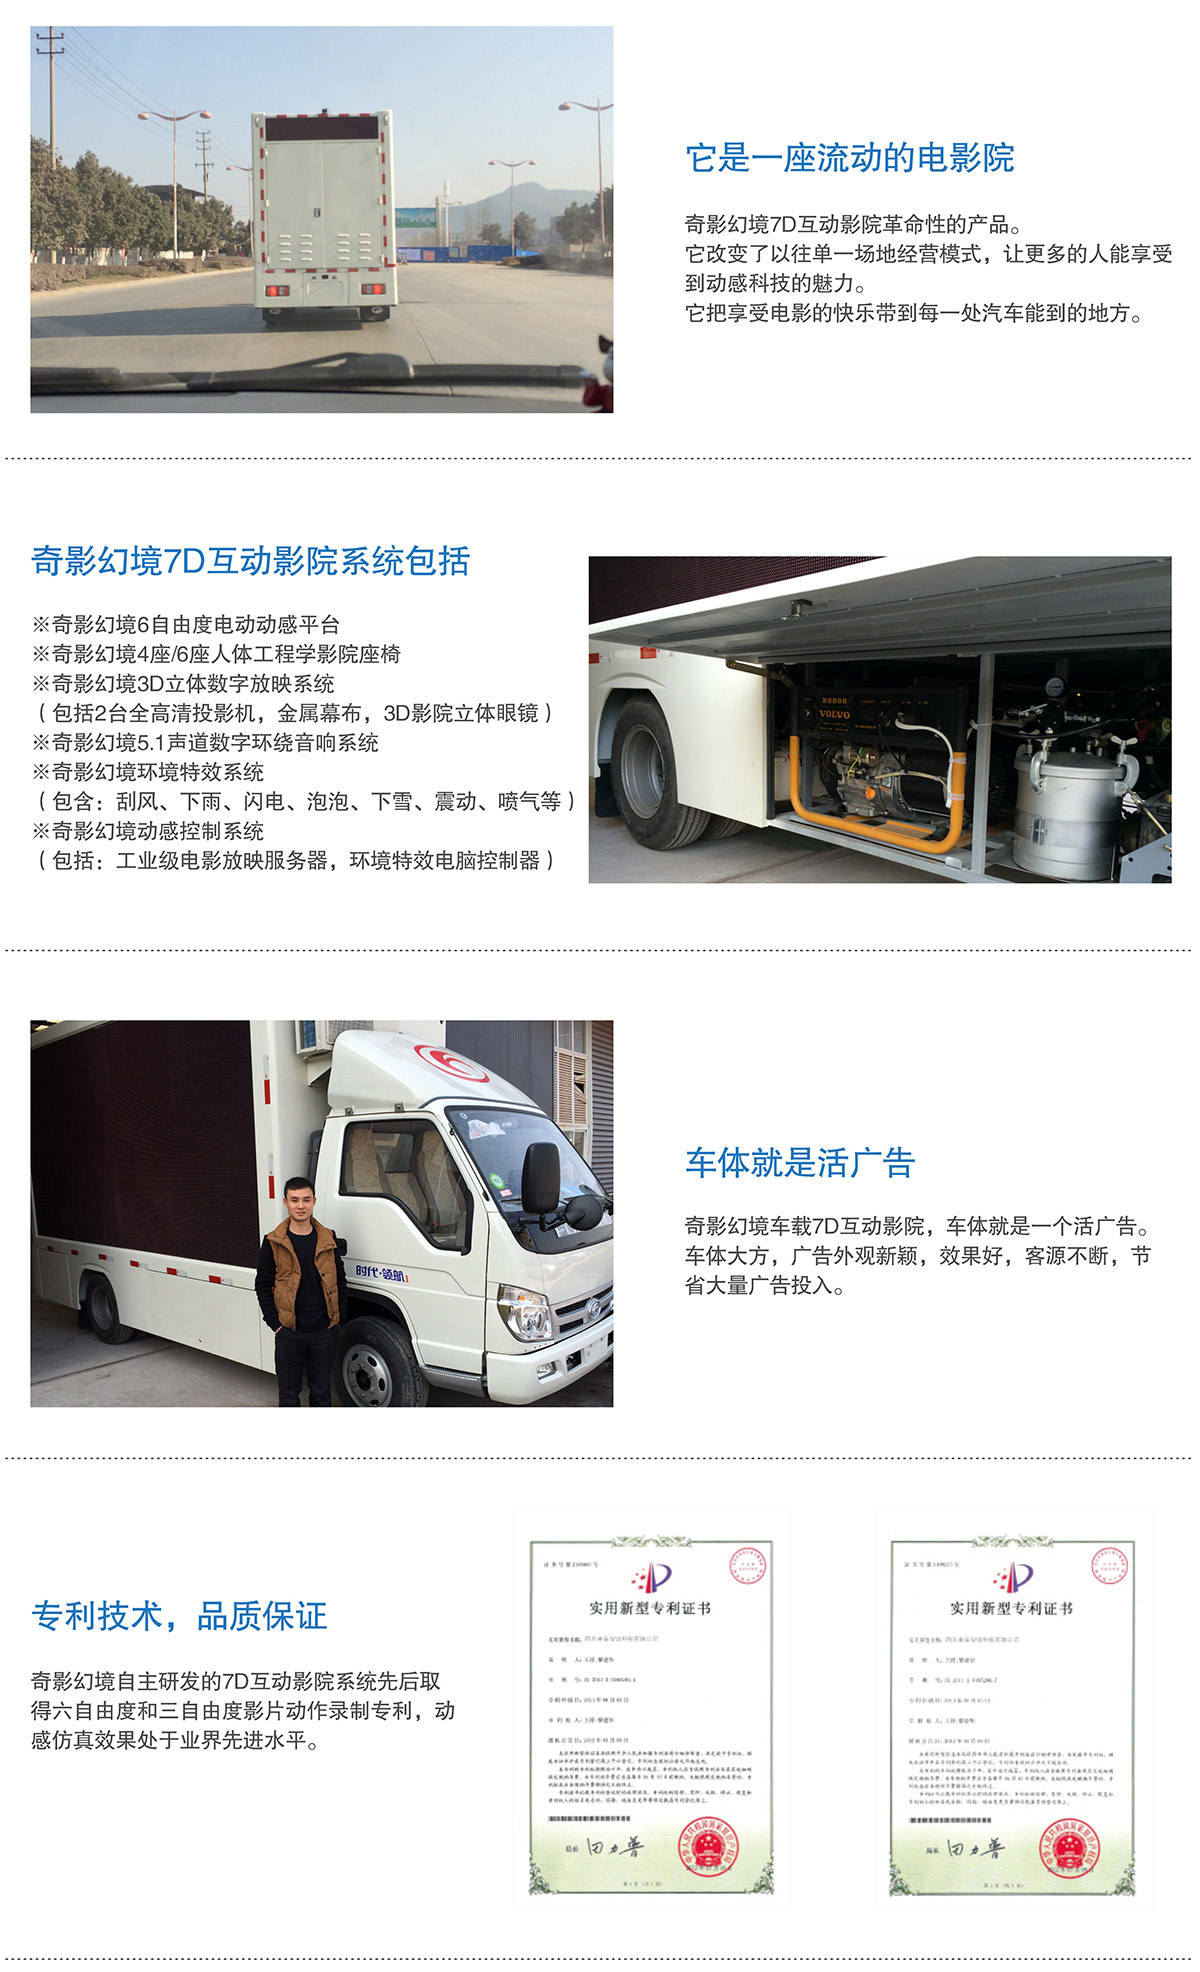 地震7D互动电影车就是活广告.jpg